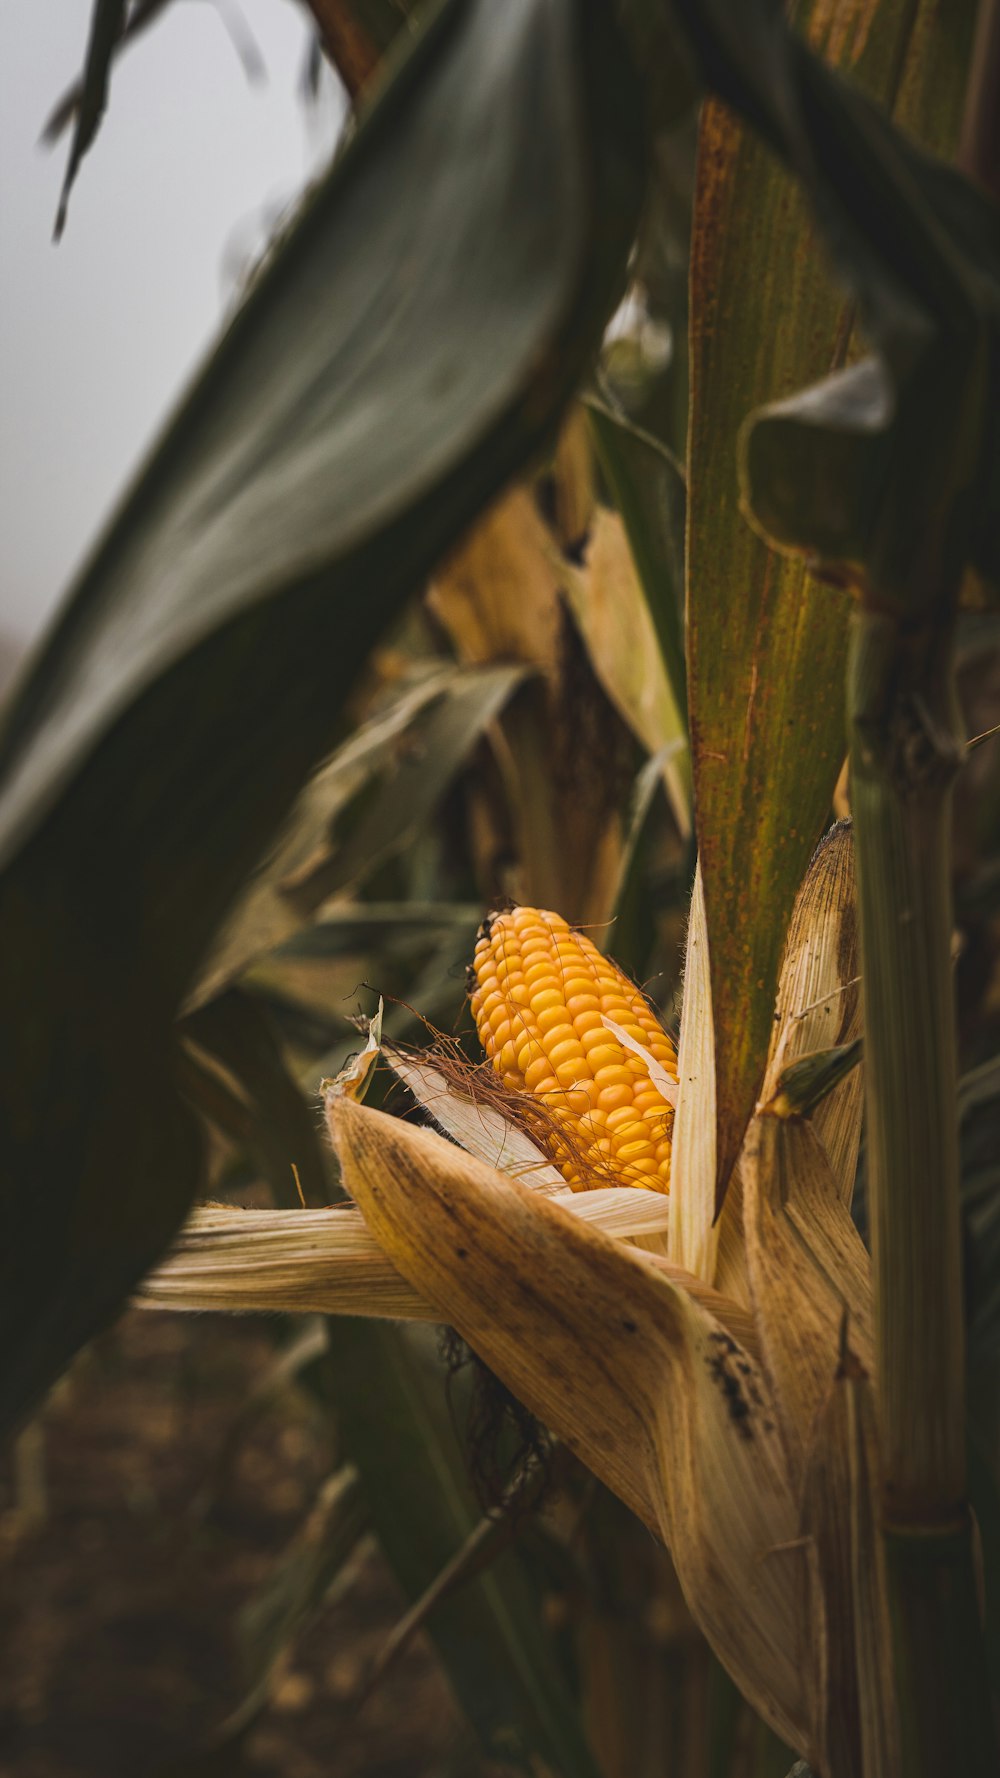 a close up of a corn cob on a stalk